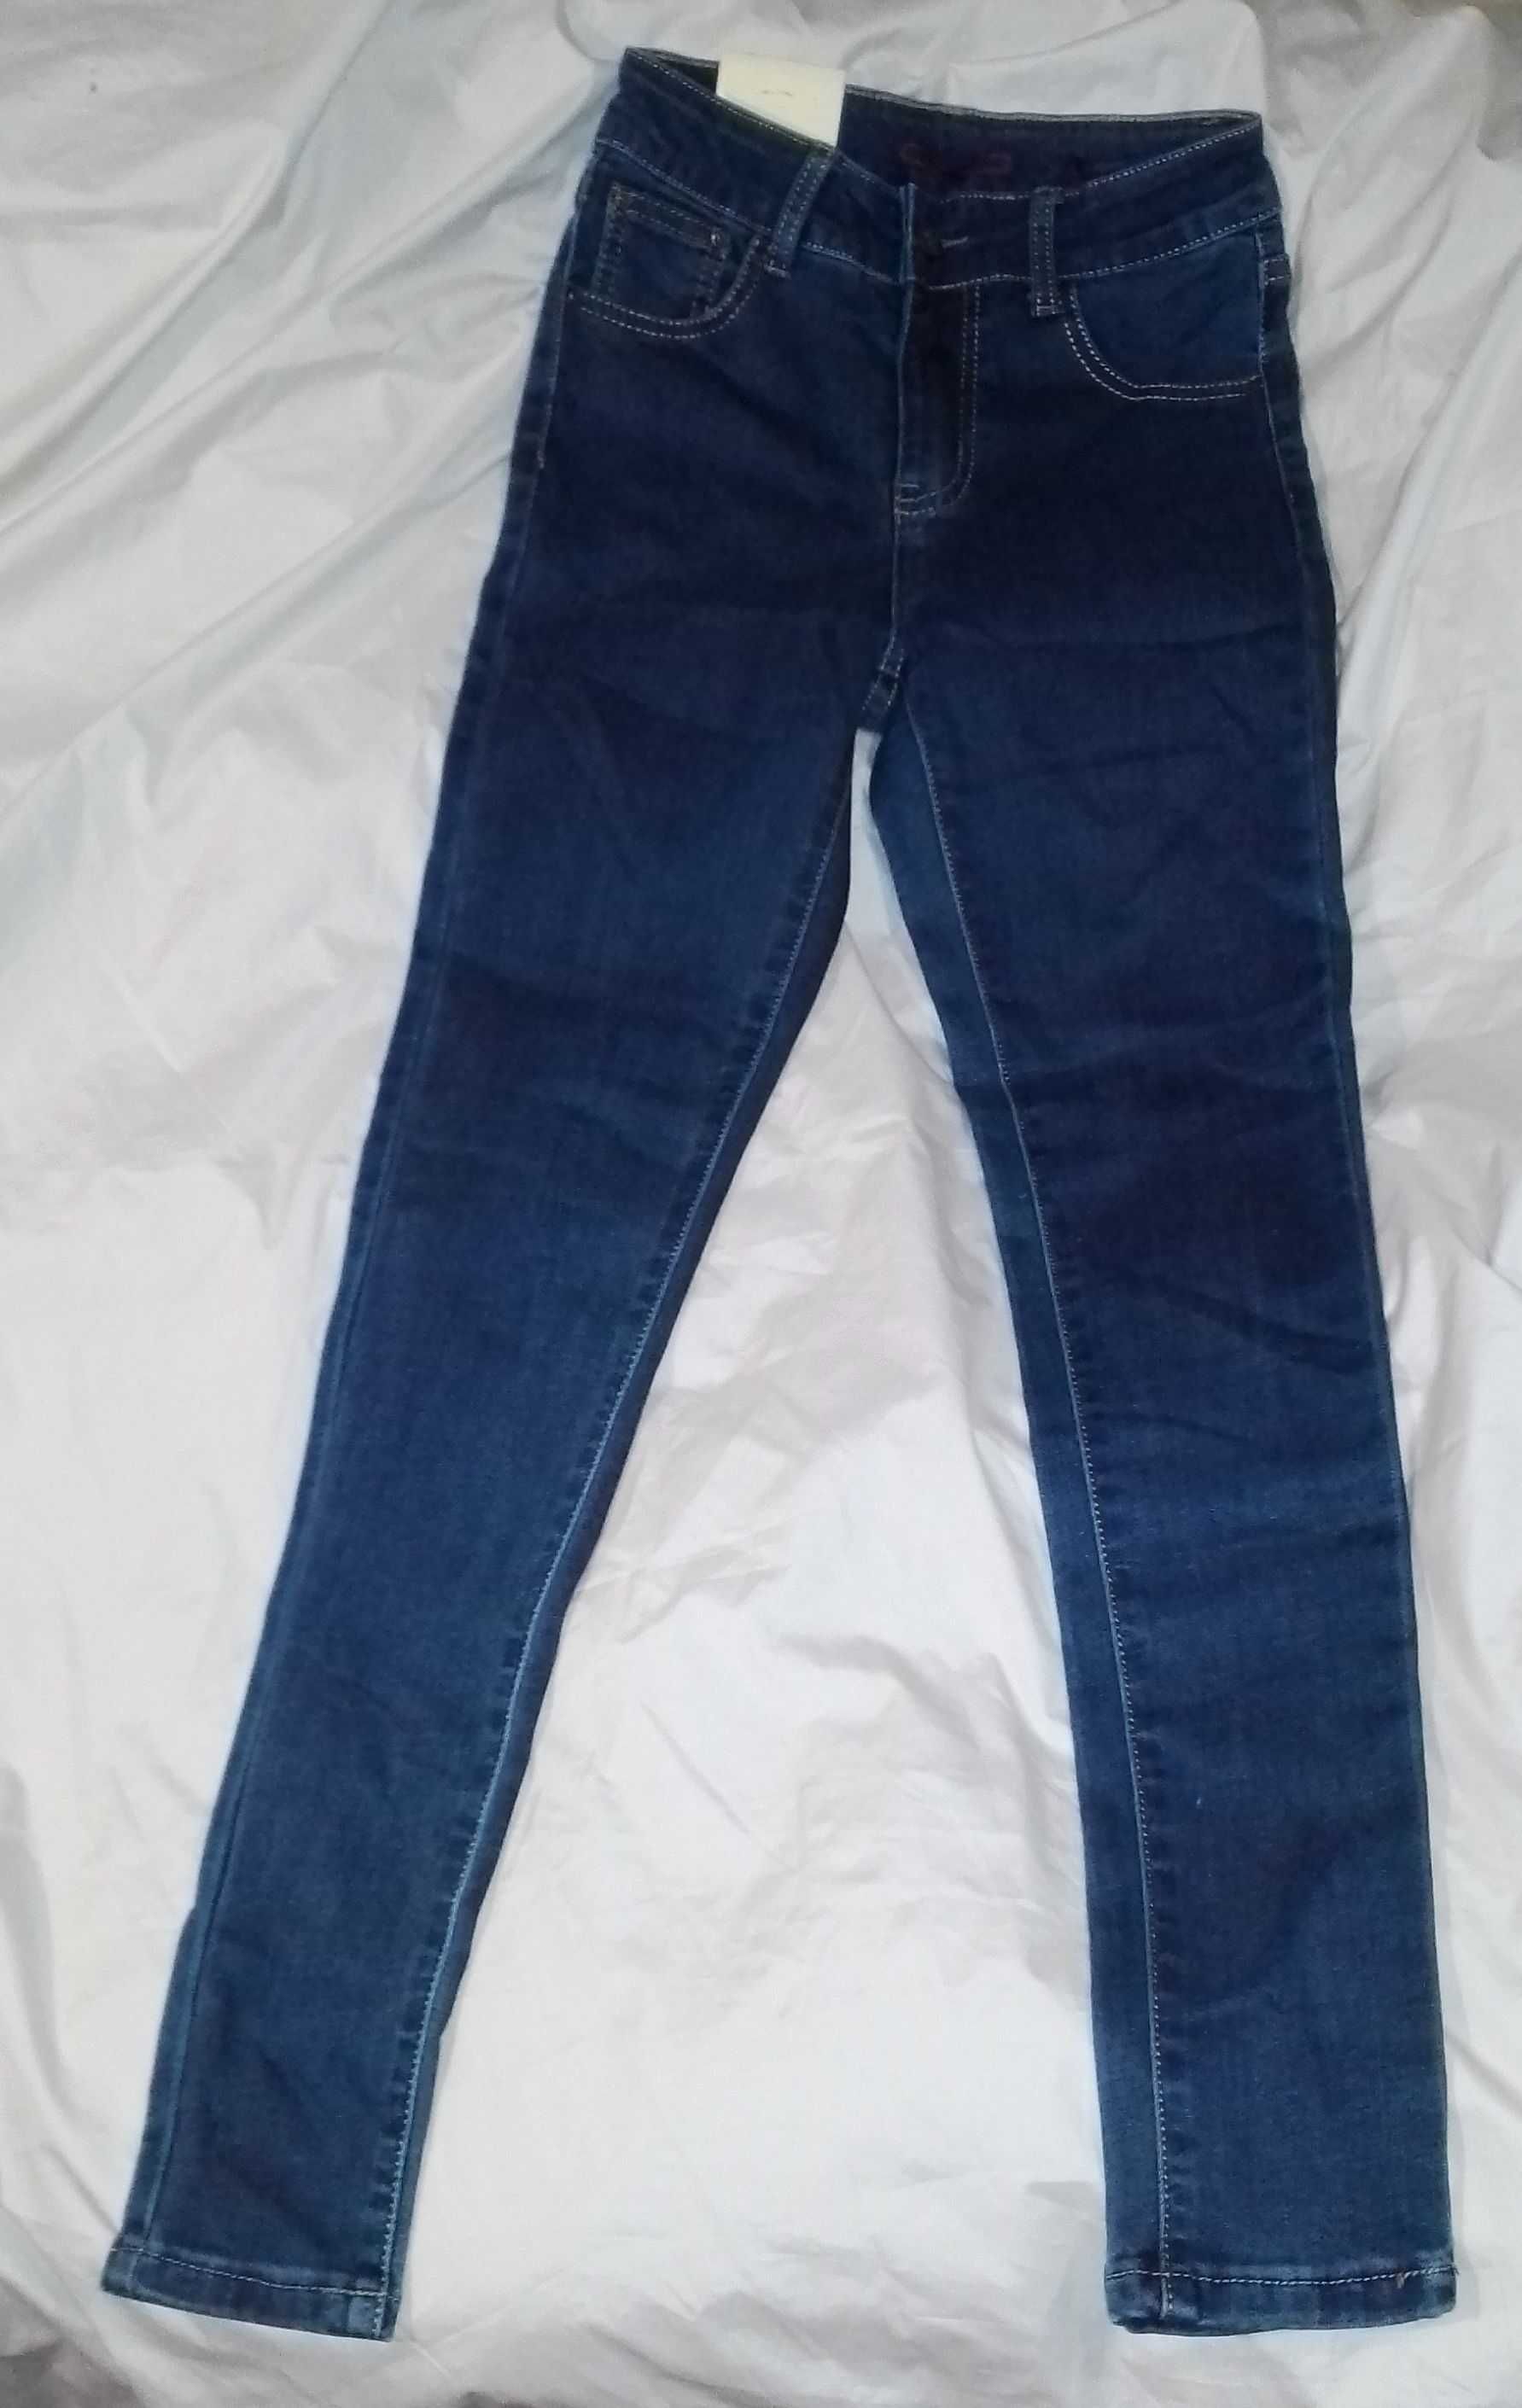 Темные узкие джинсы стрейч на девочку, джинсы узкие размер S/M, джинсы